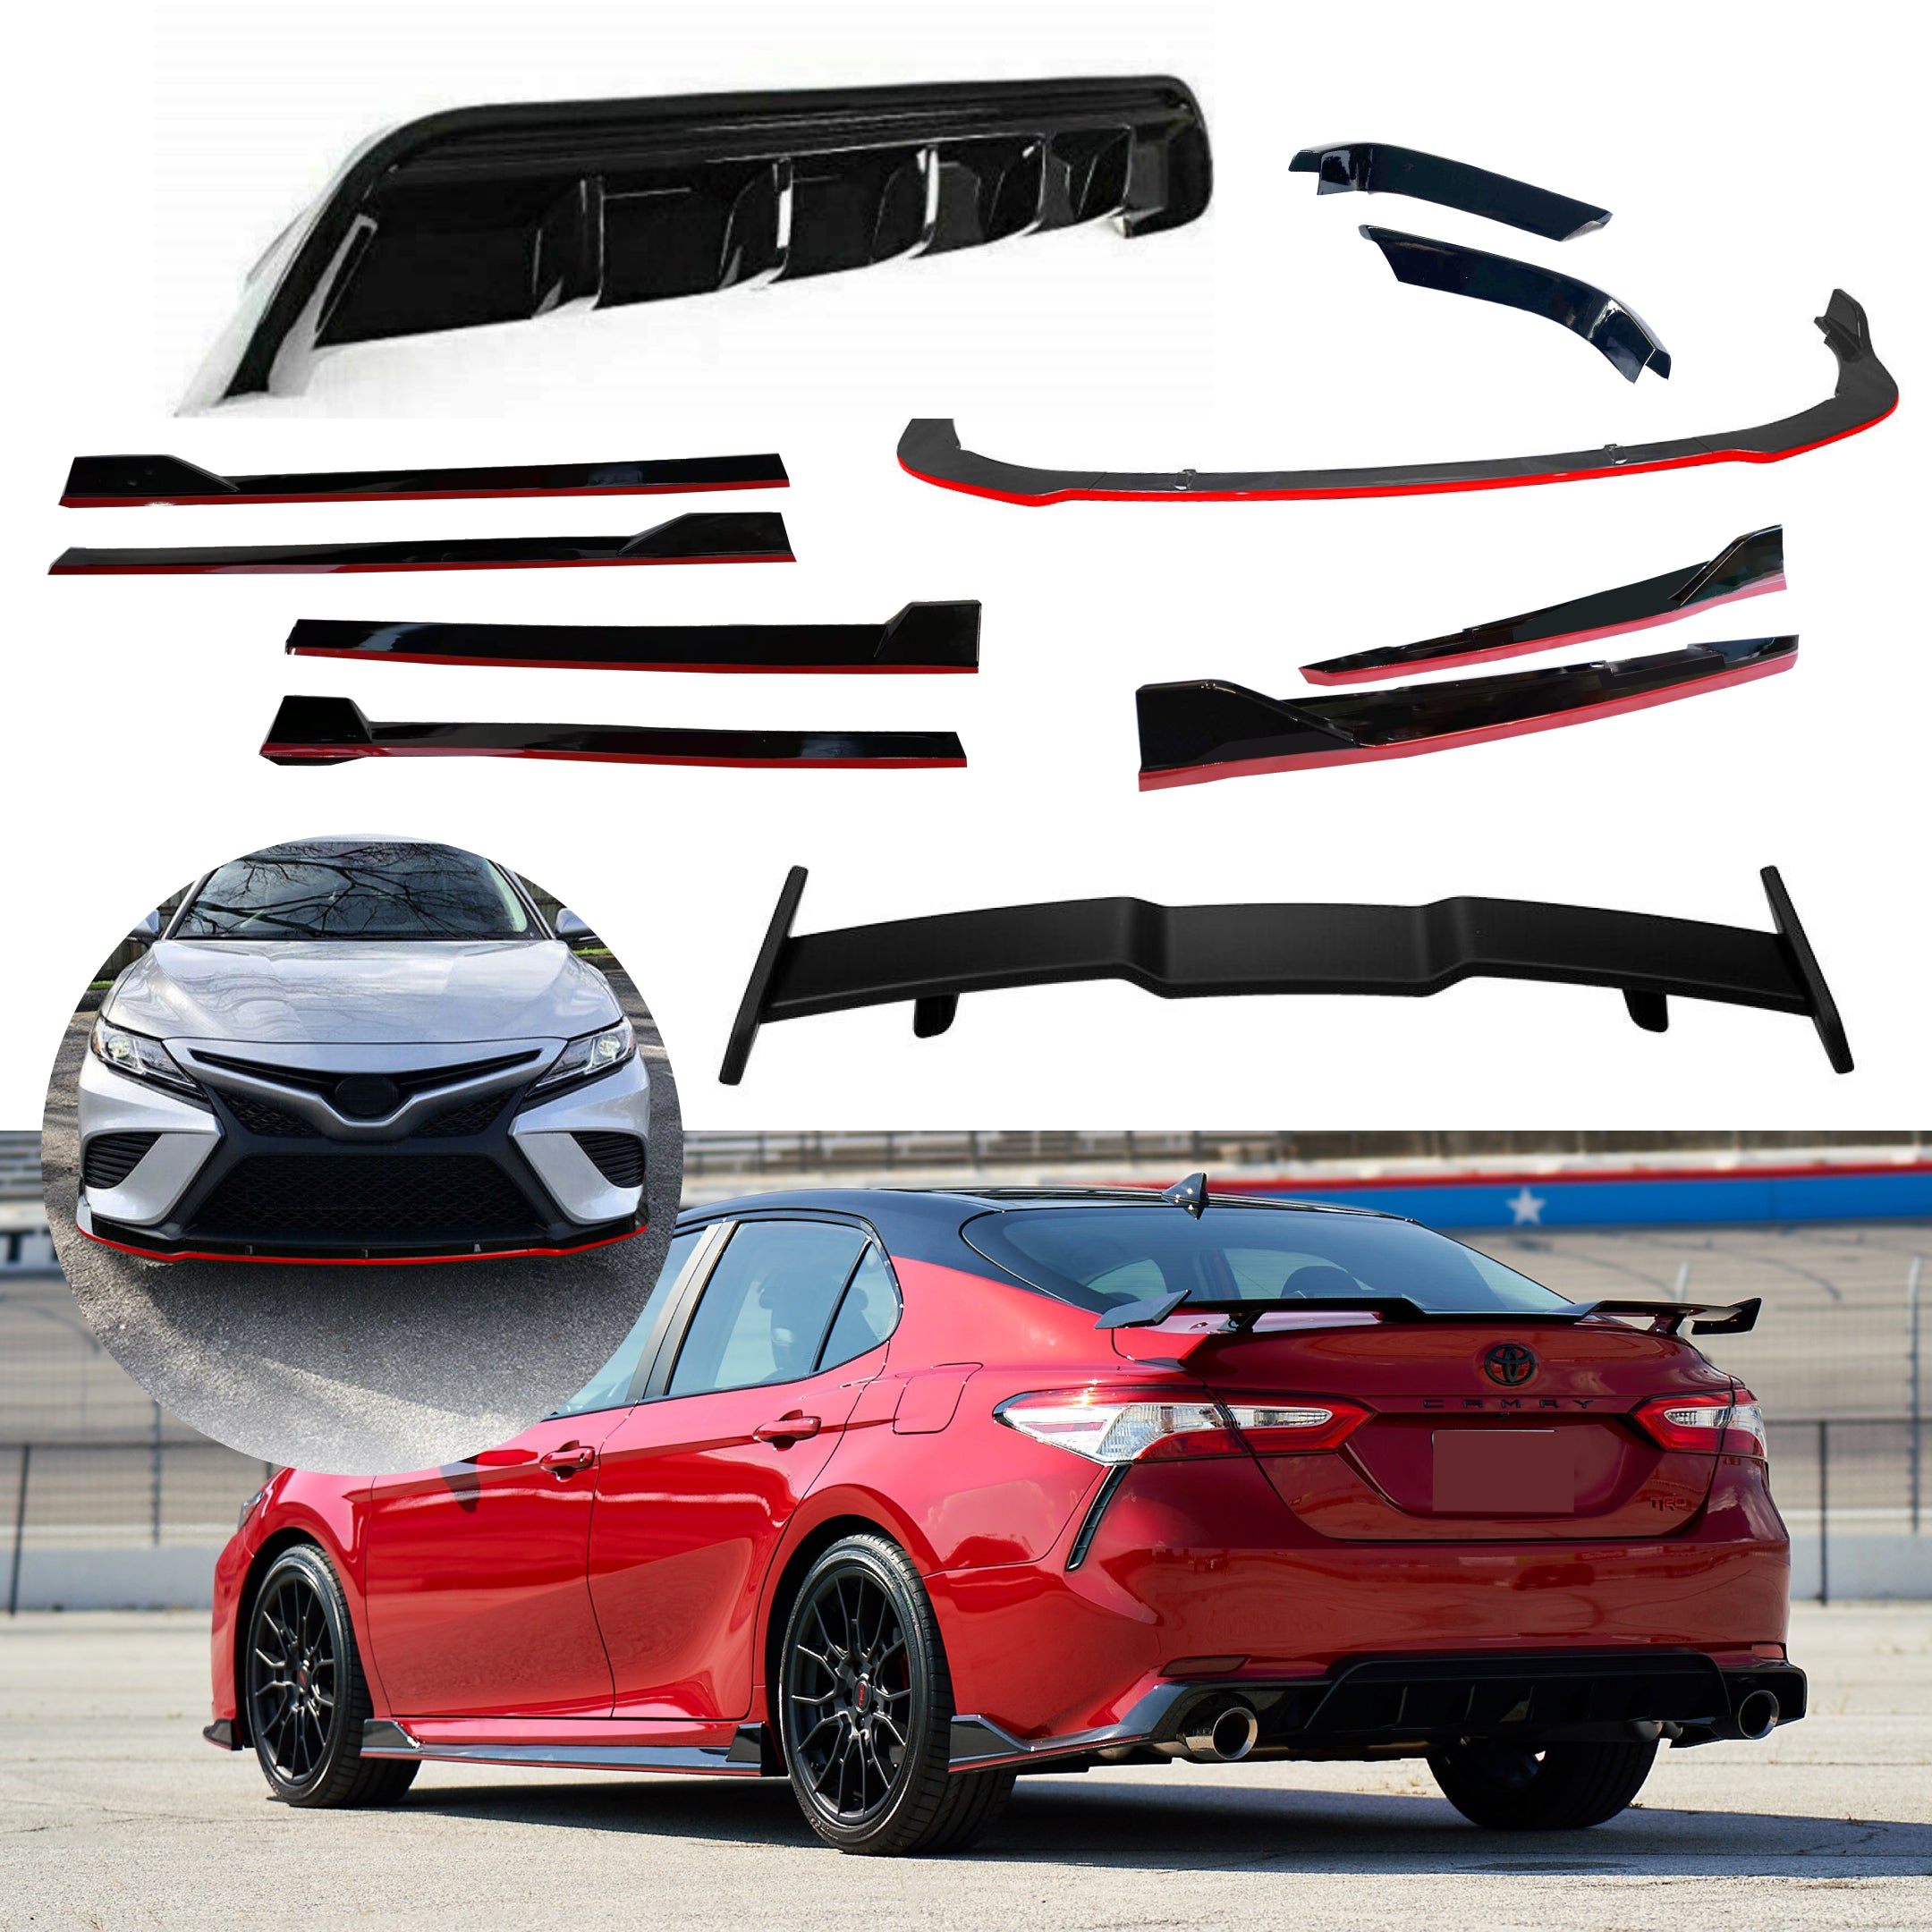 Compatible con Toyota Camry 2018-2022, alerón delantero completo, difusor trasero, faldas laterales, juego de divisores (borde negro brillante y rojo)